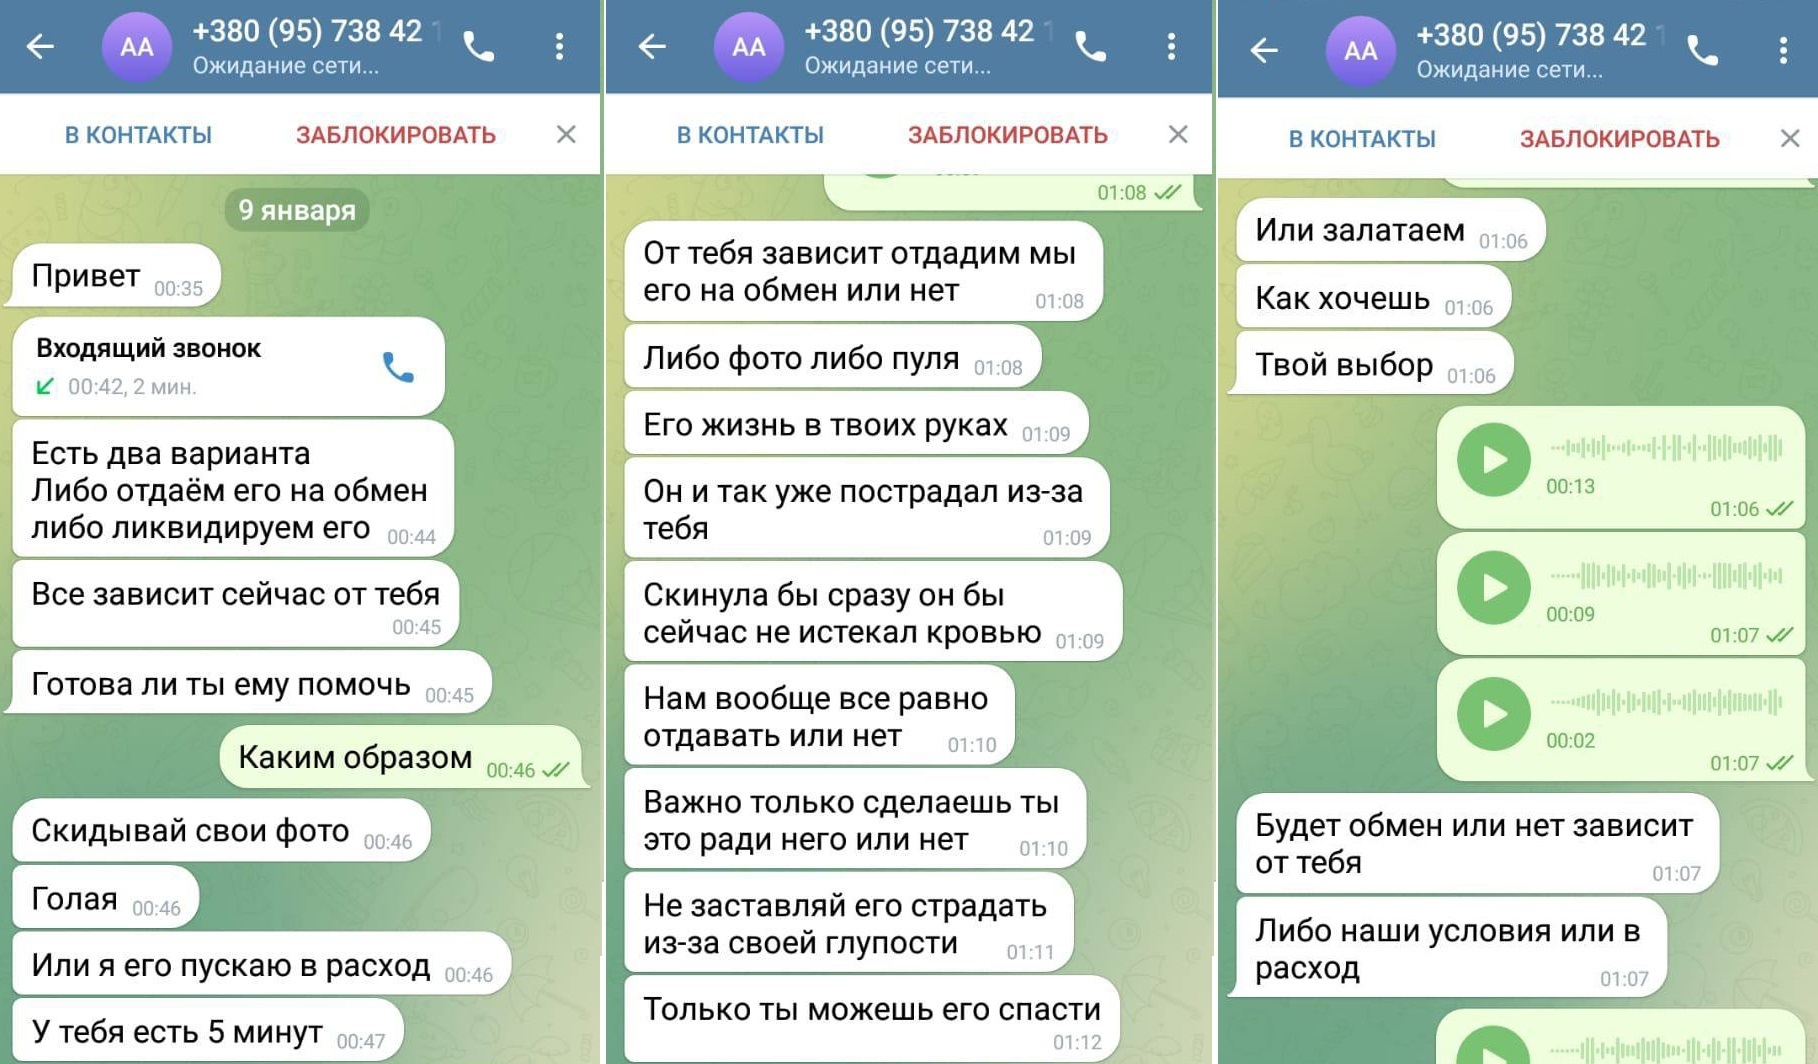 Девушка ищет мужчину для секса в Одессе. Частные объявления от молодных девушек – Badanga